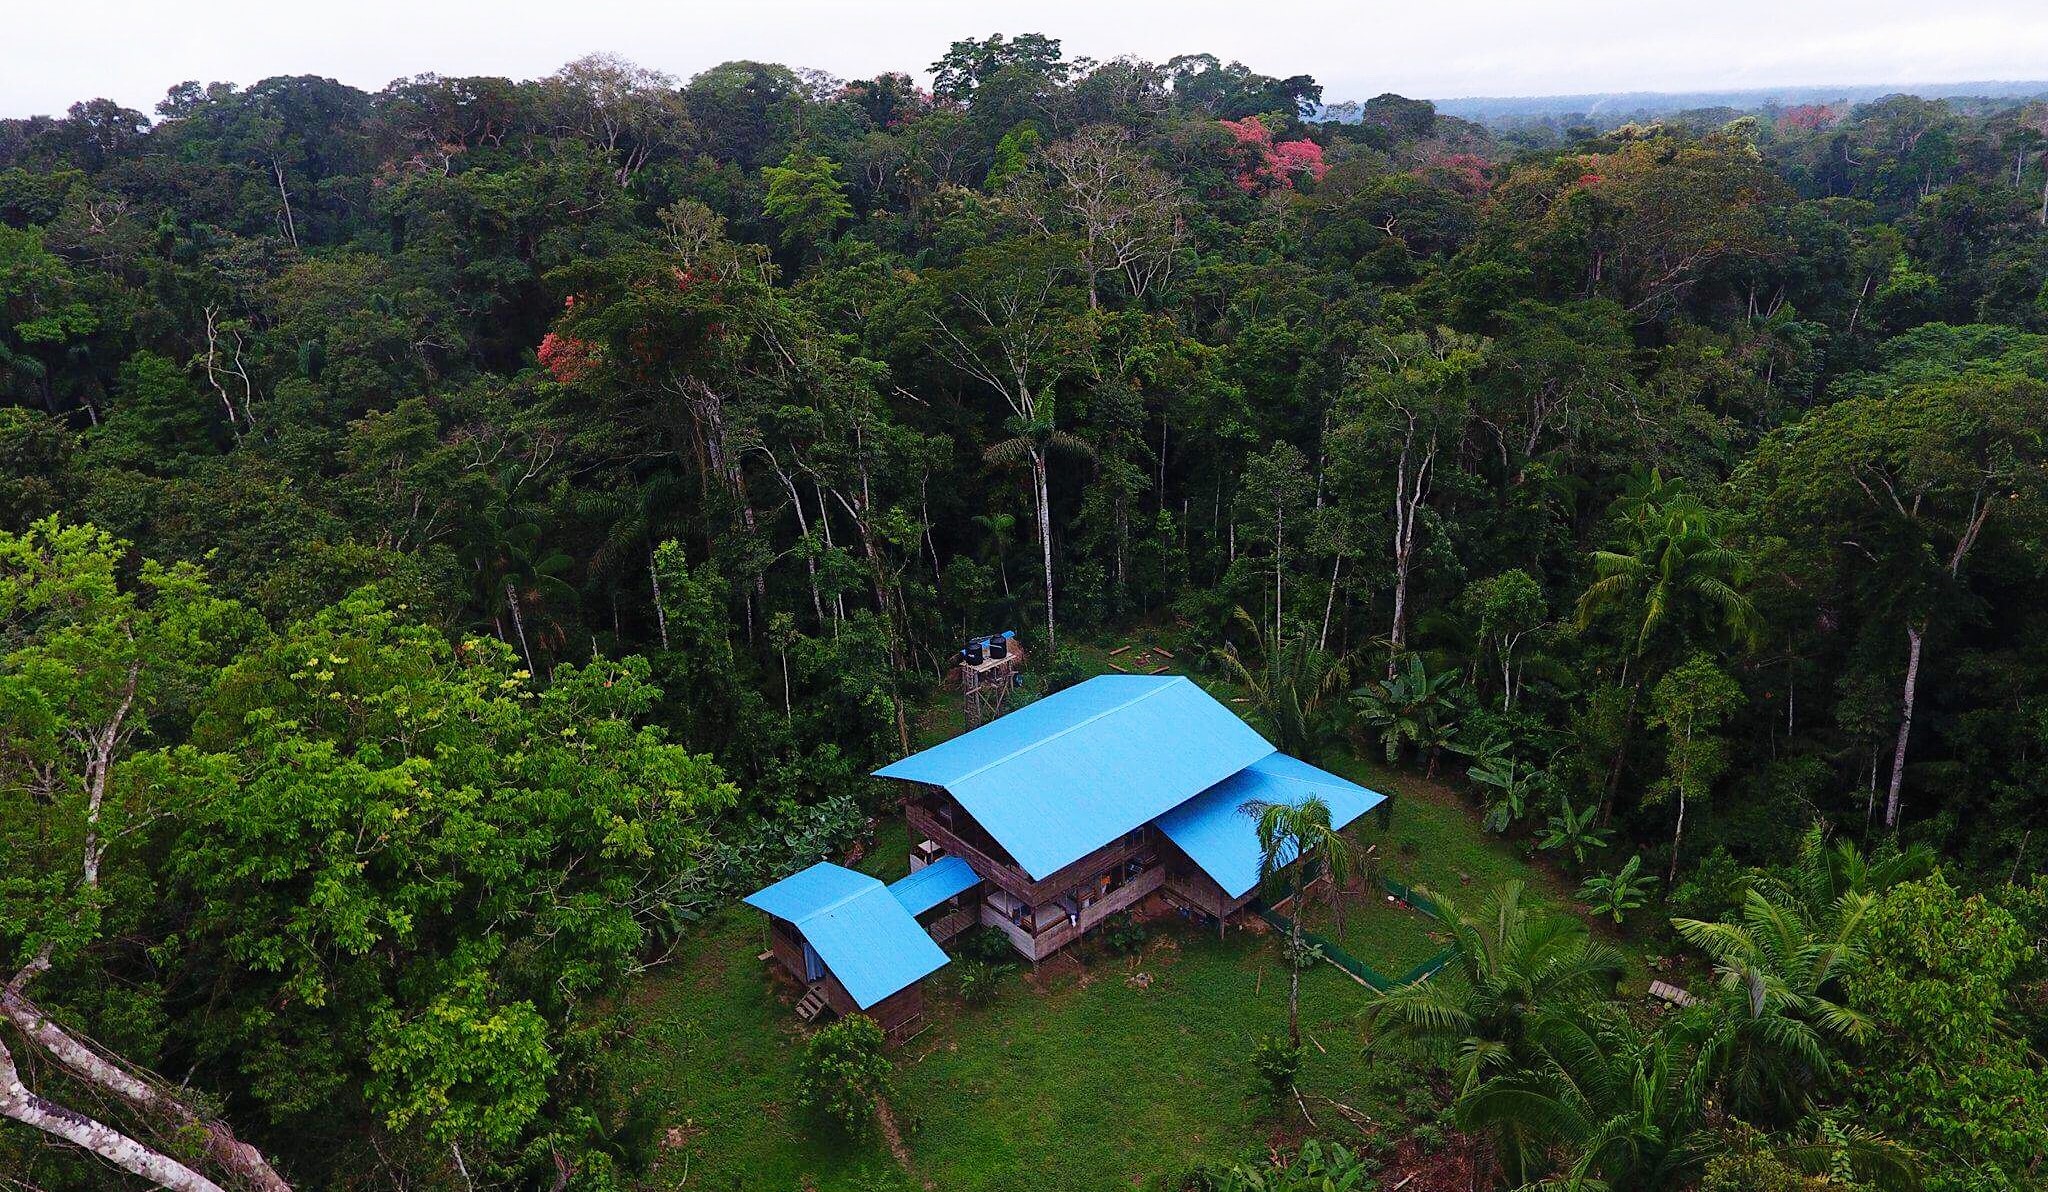 The Hoja Nueva center in the Peruvian Amazon